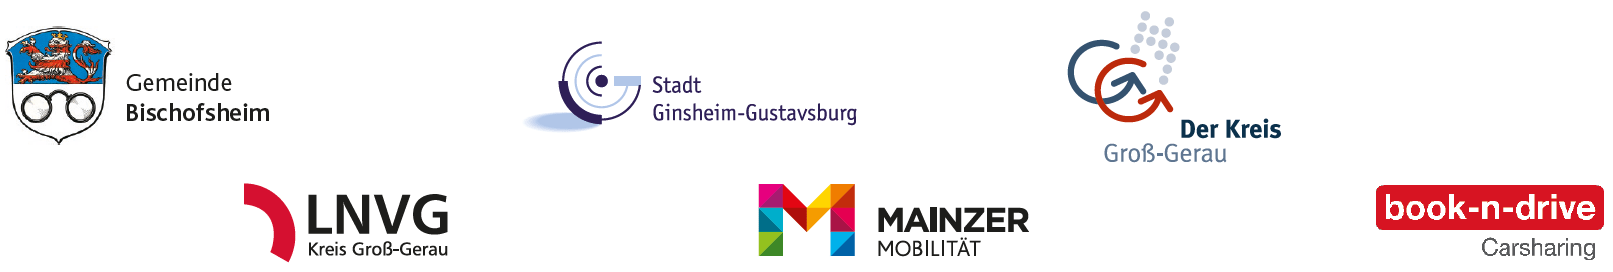 Logos der Gemeinde Bischofsheim, Stadt Ginsheim-Gustavsburg, Kreis Groß-Gerau, LNVG Kreis Groß-Gerau, Mainzer Mobilität und von book-n-drive